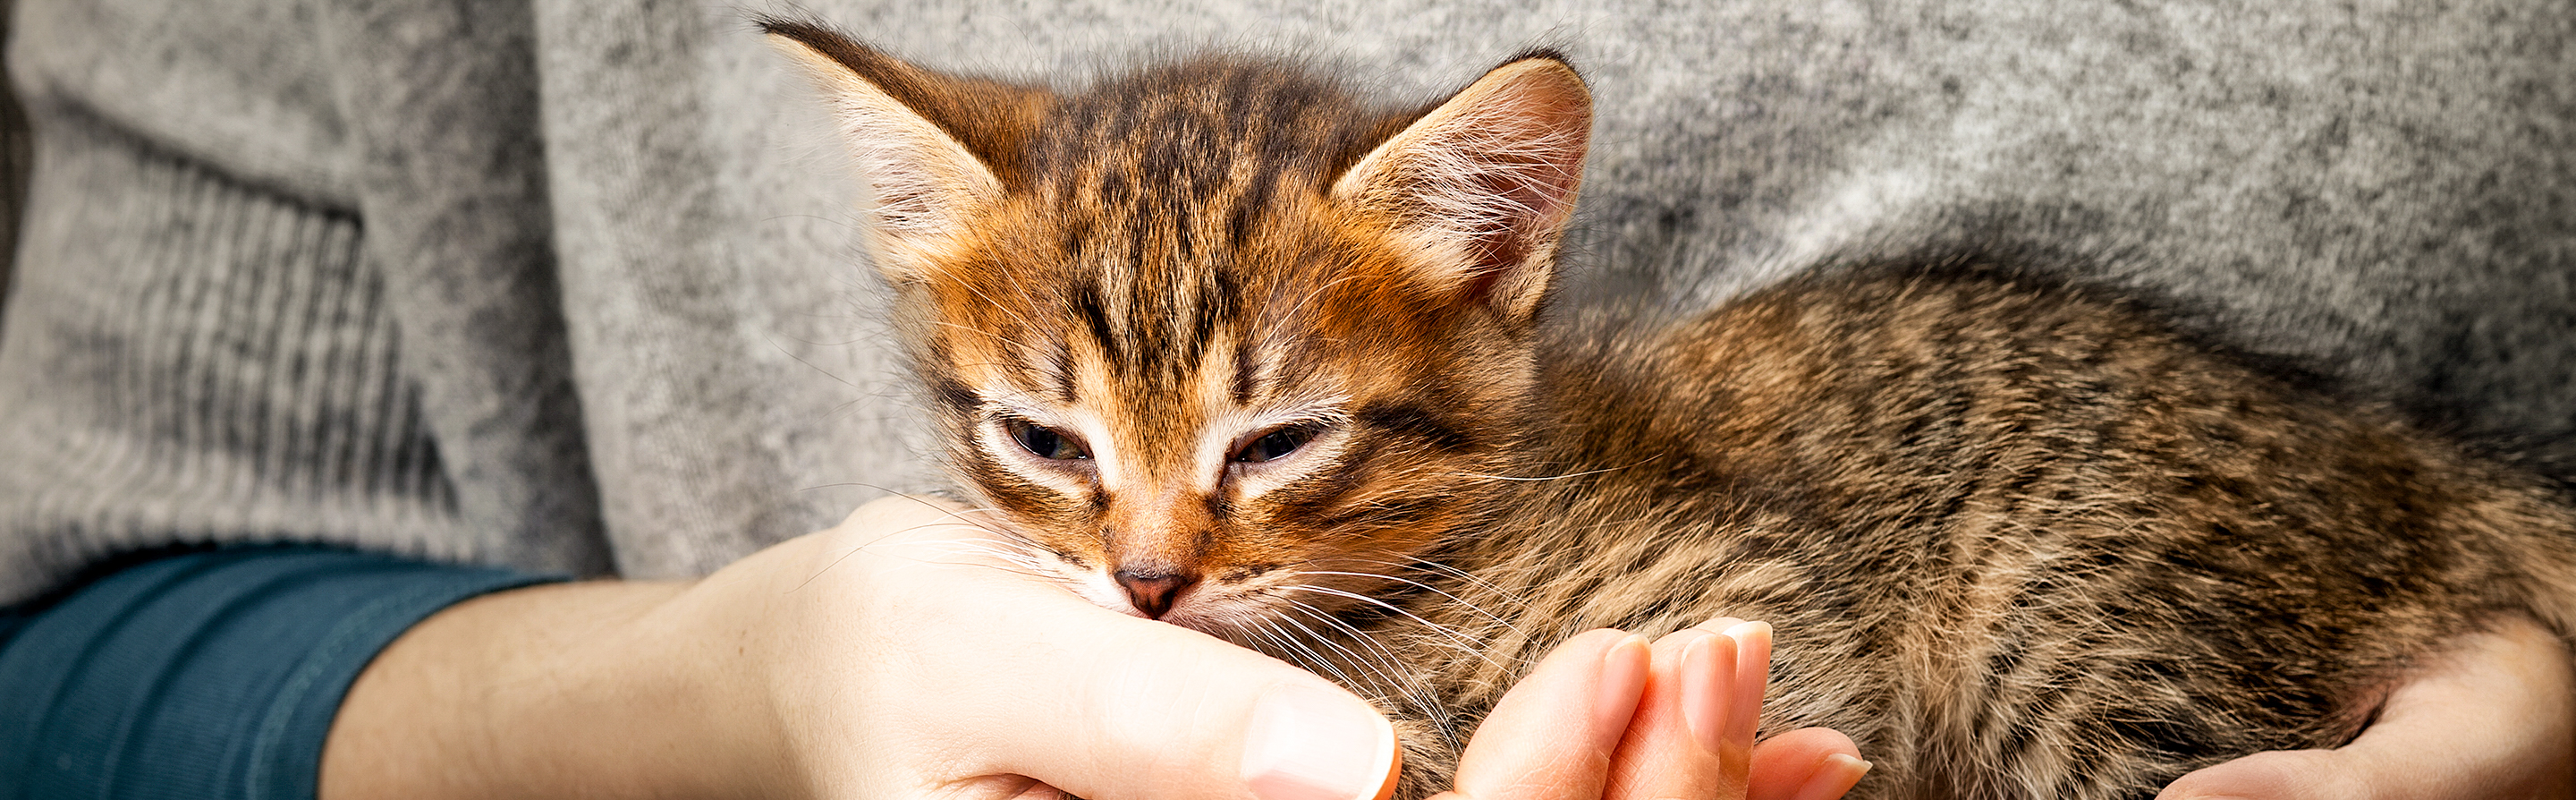 Brown tabby kitten being held by owner in a grey top